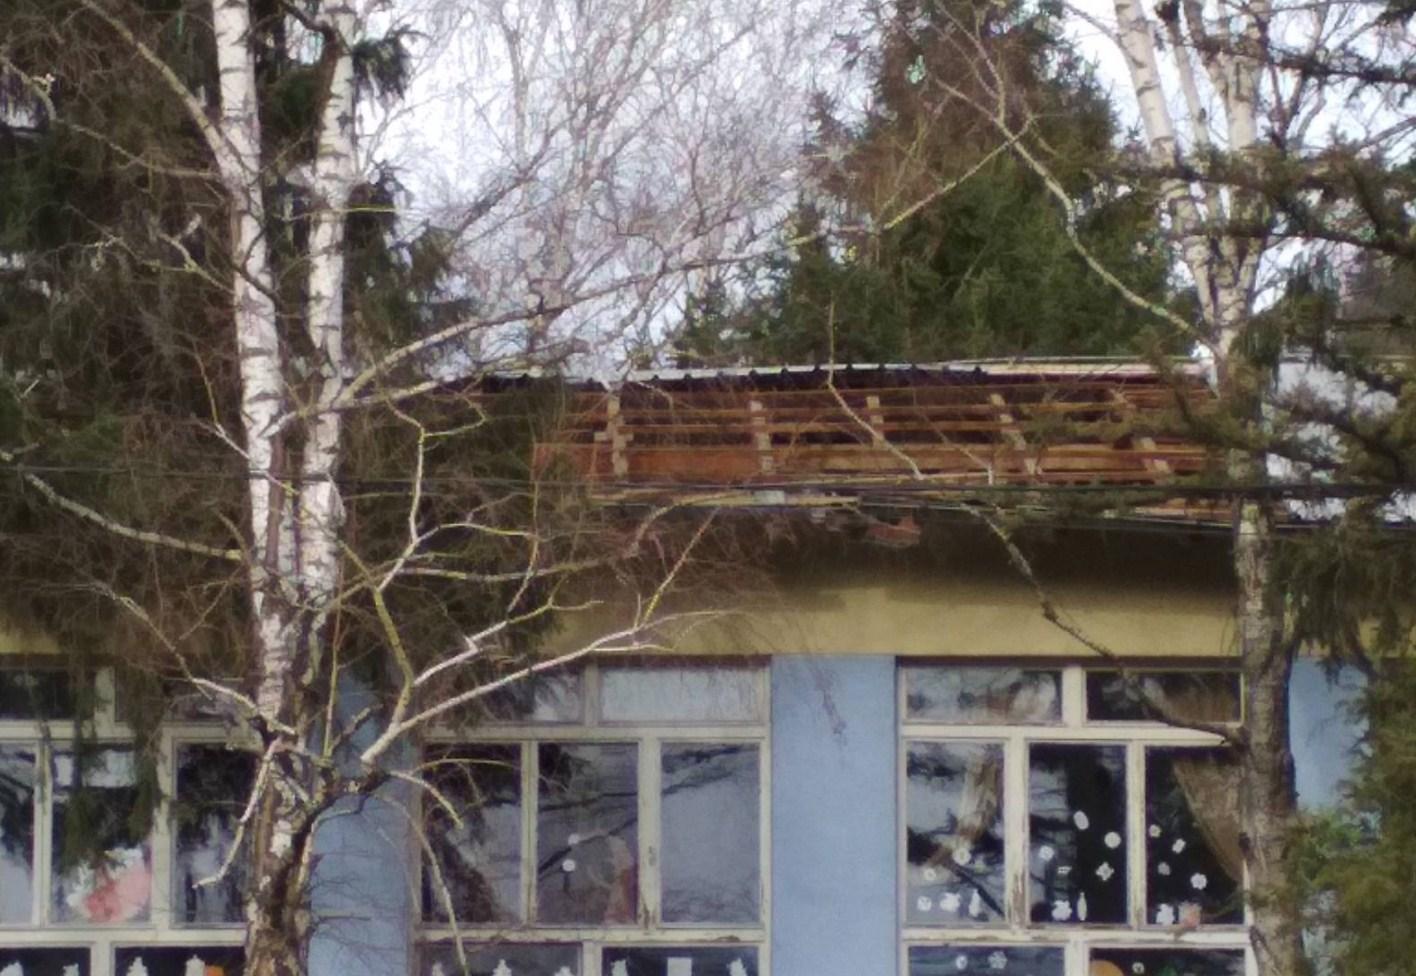 Vjetar odnio krov sa škole - Avaz